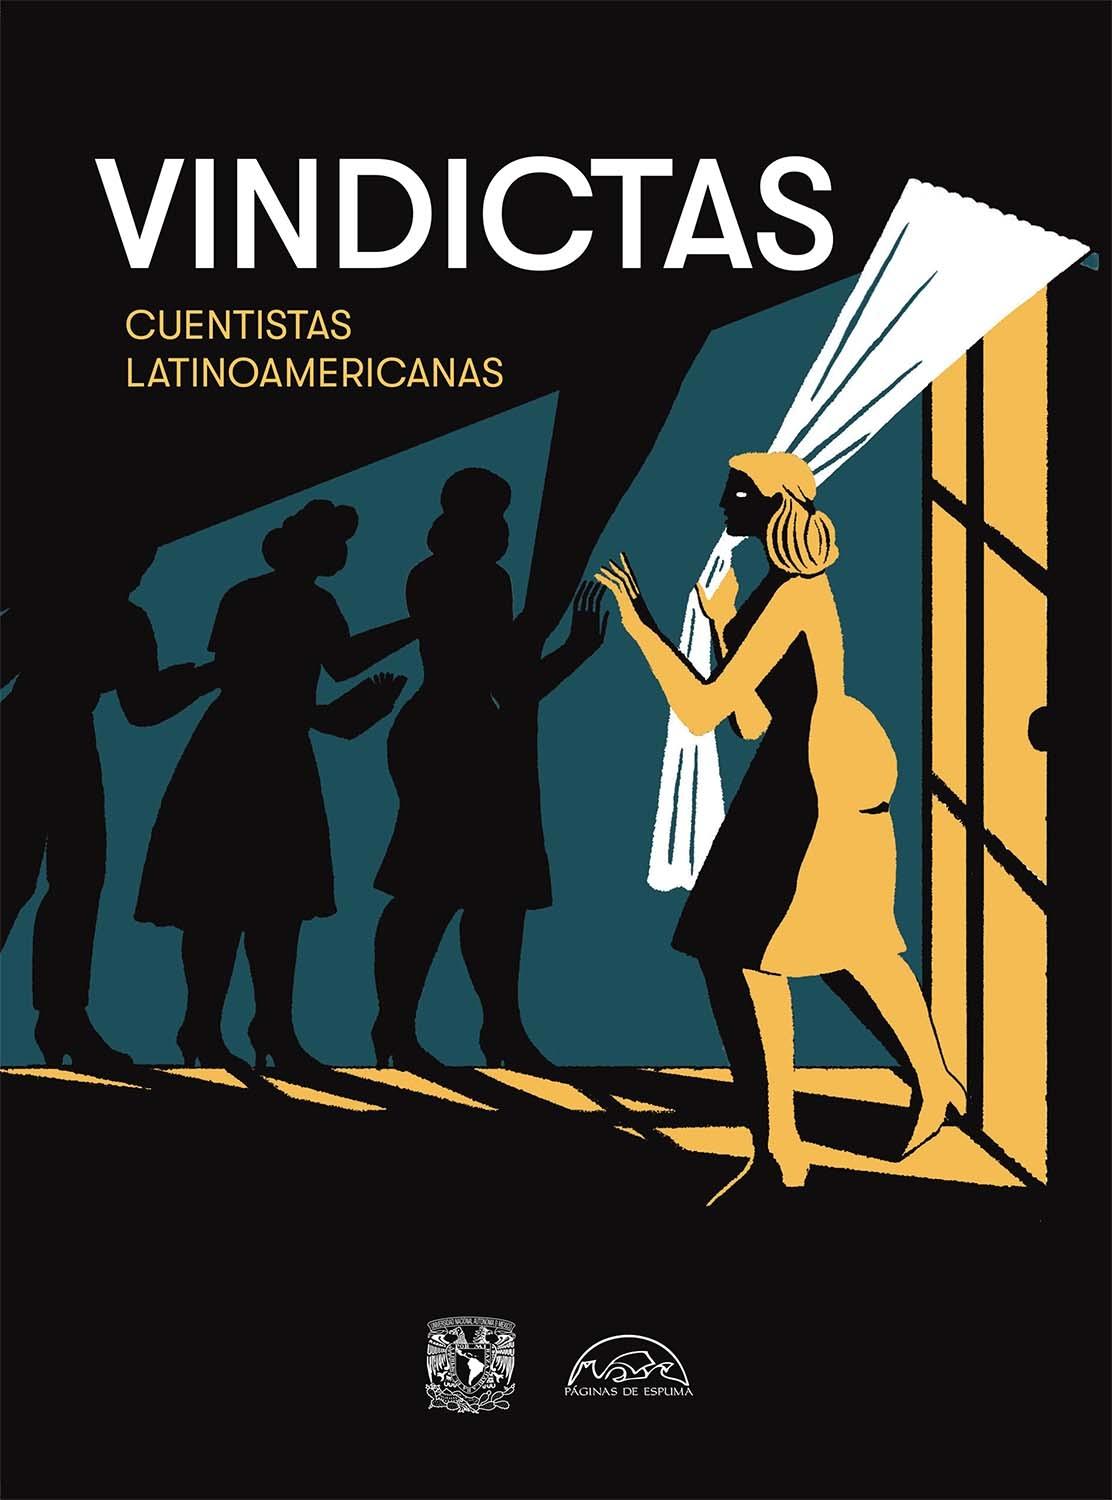 Vindictas "Cuentistas Latinoamericanas". 